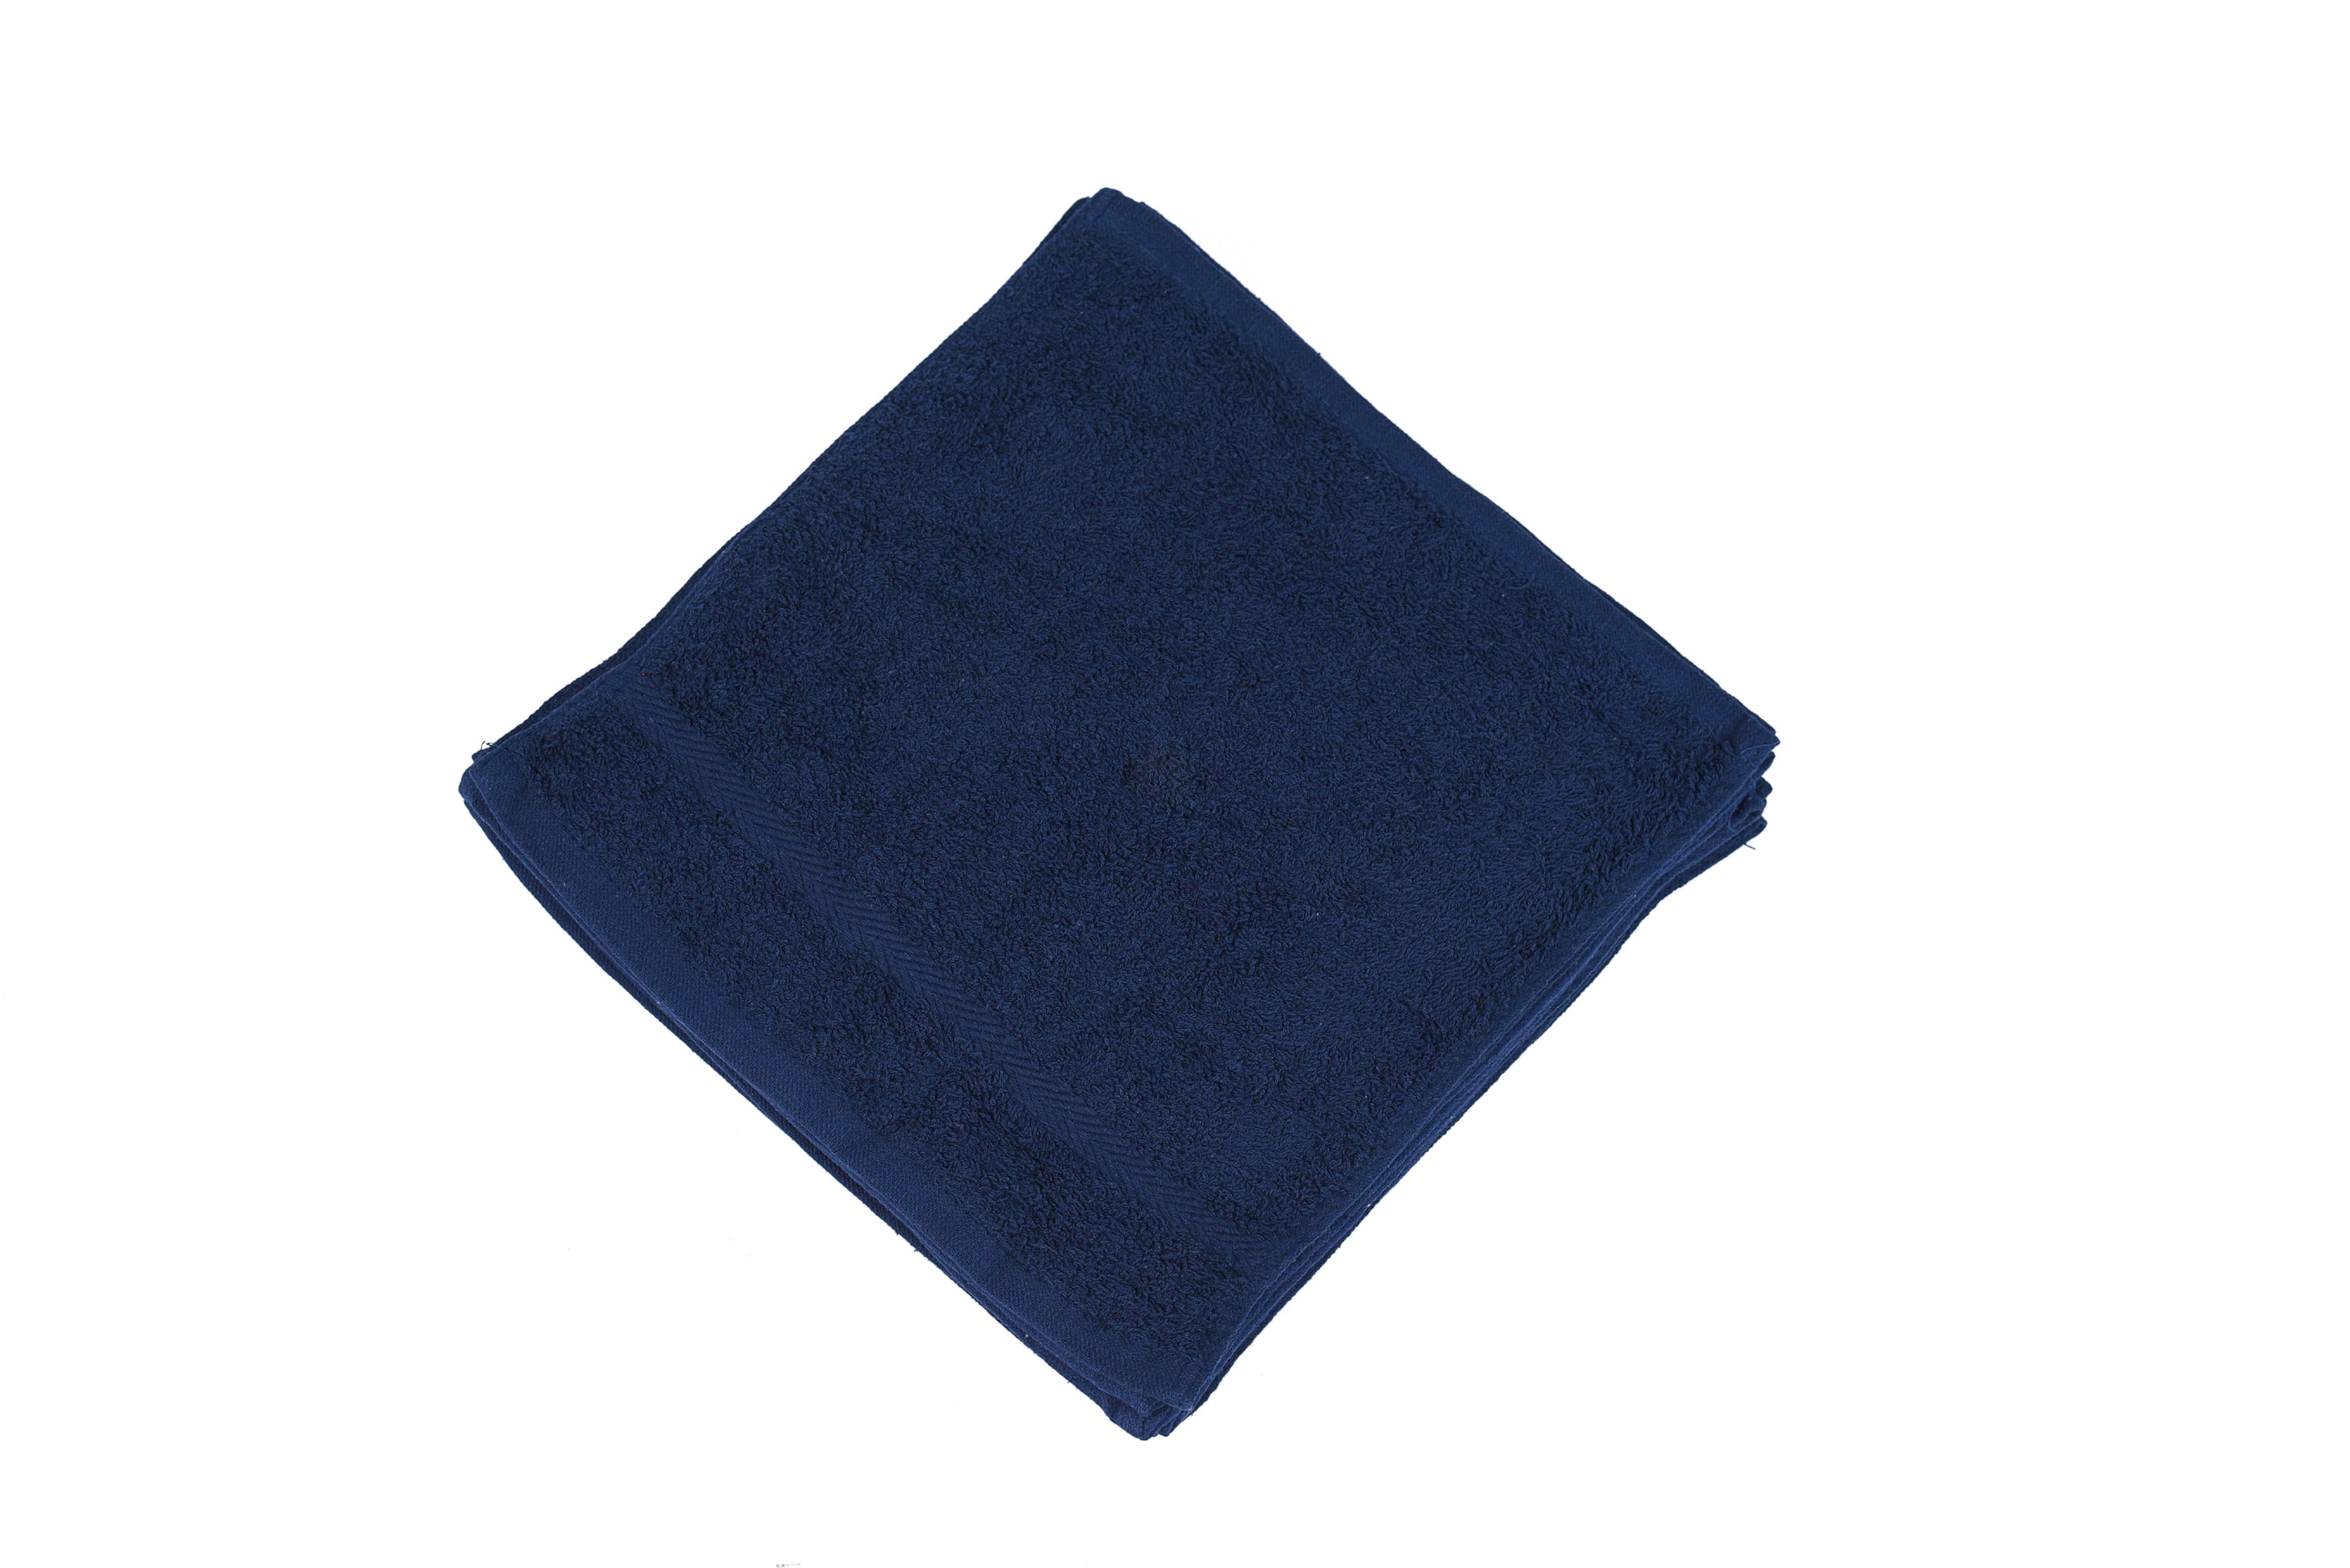 12x12 Premium Color Washcloths - 1 lb/dz - Blue Mist/Sky